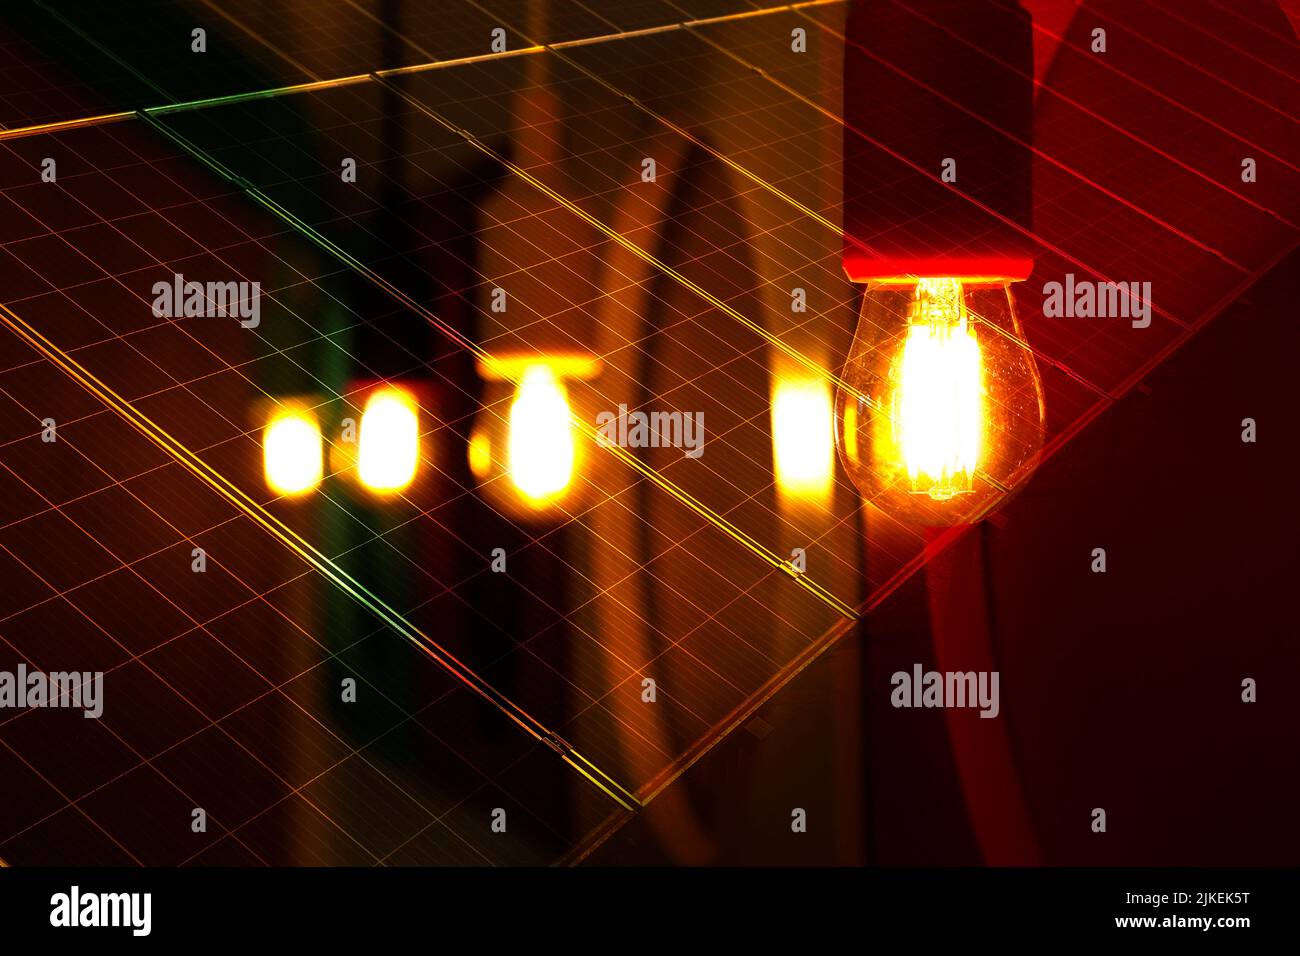 detalle de varias bombillas encendidas en color amarillo y tono cálido, fondo oscuro - placas con células para la captura de la energía solar Foto de stock